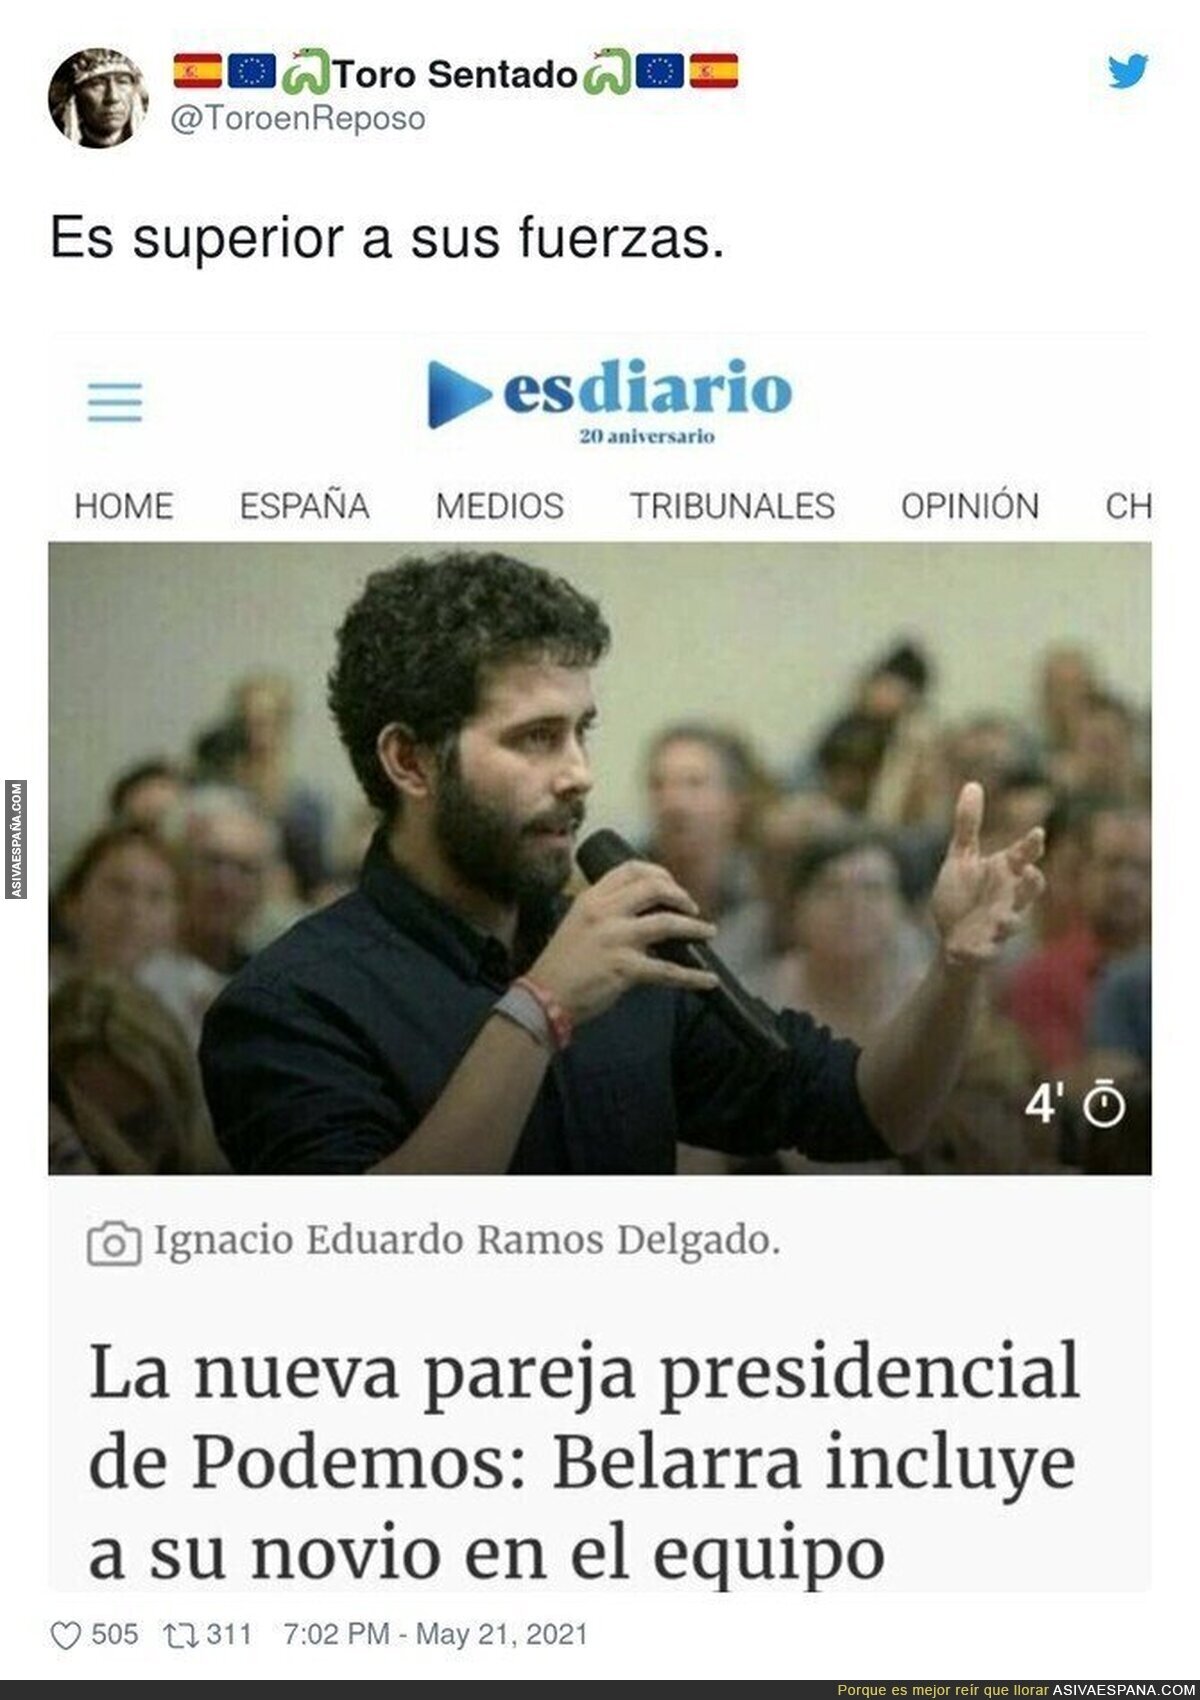 Típico de Podemos